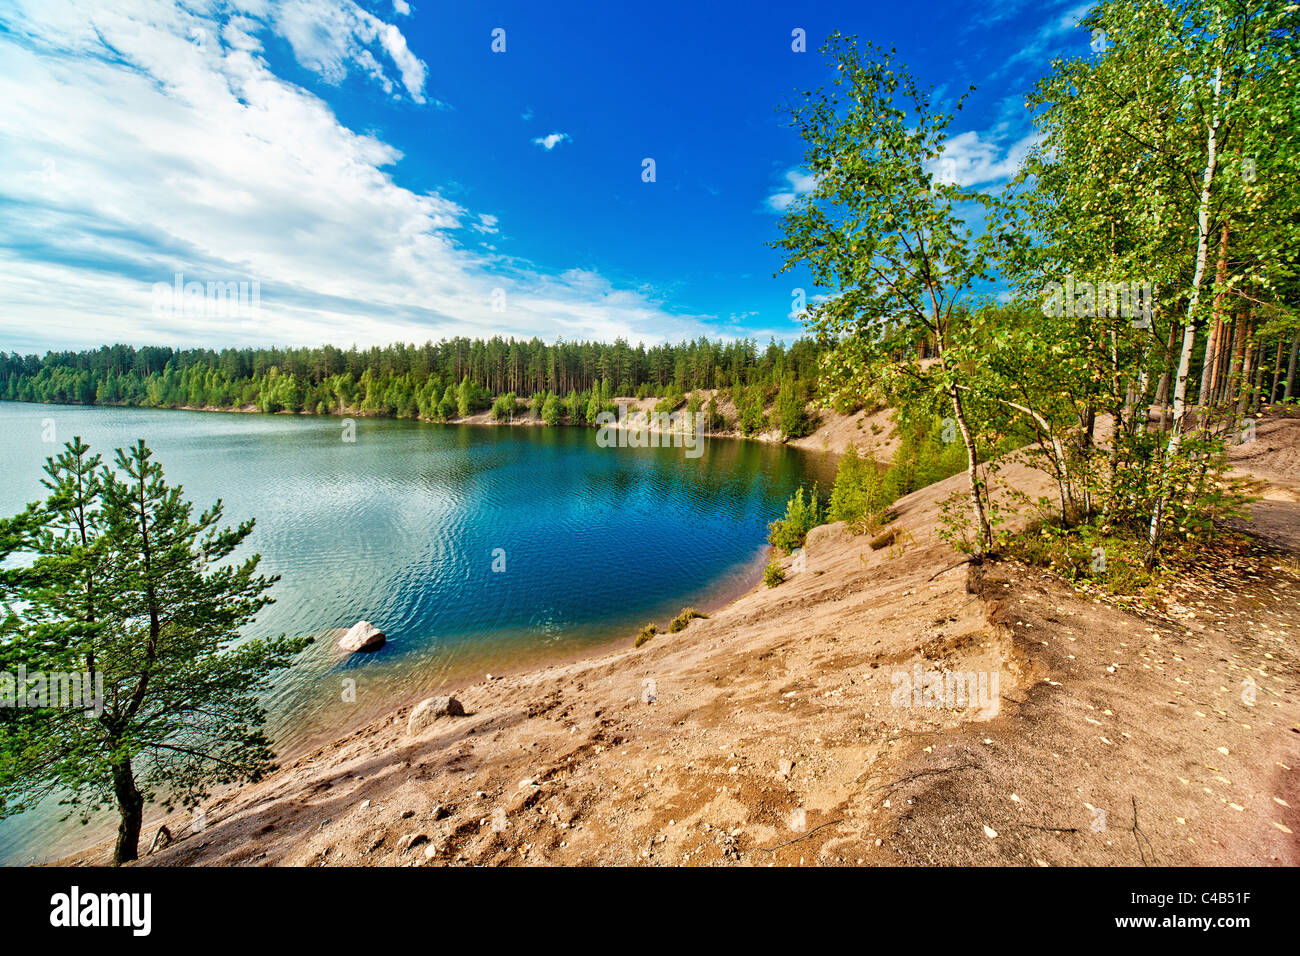 Karelia lake wide angle view. Stock Photo